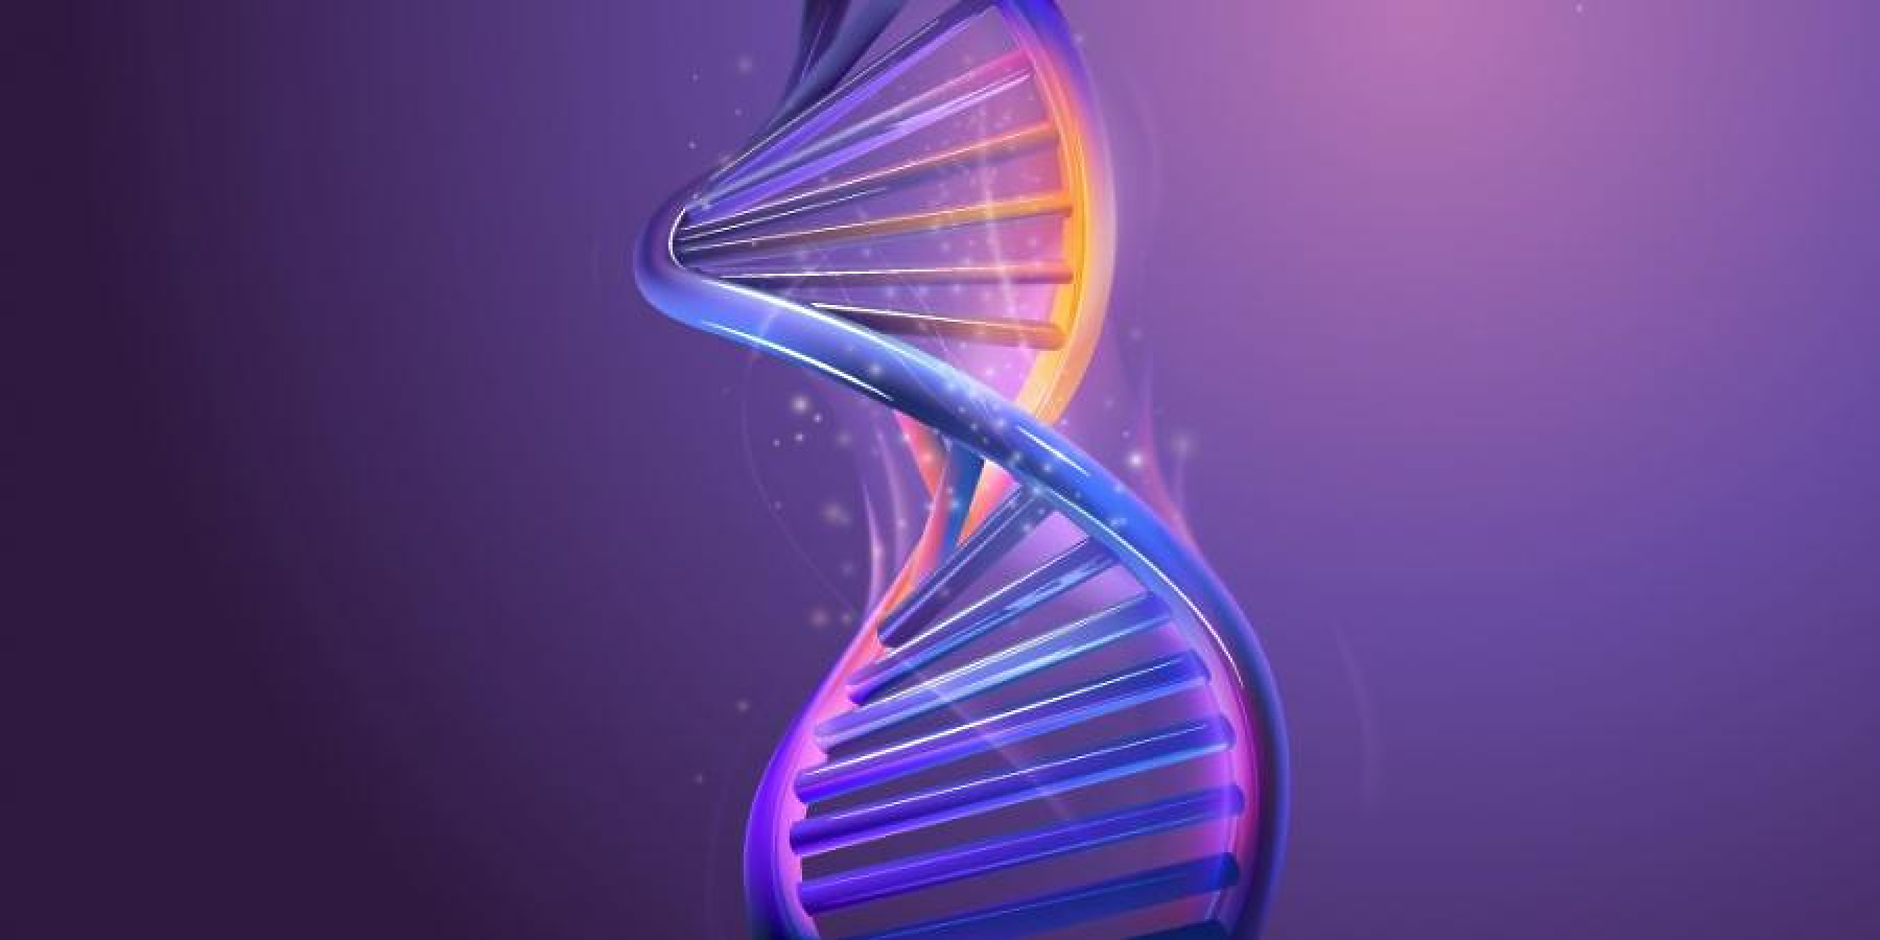  Учени секвенираха последната част от човешкия геном – хромозомата Y